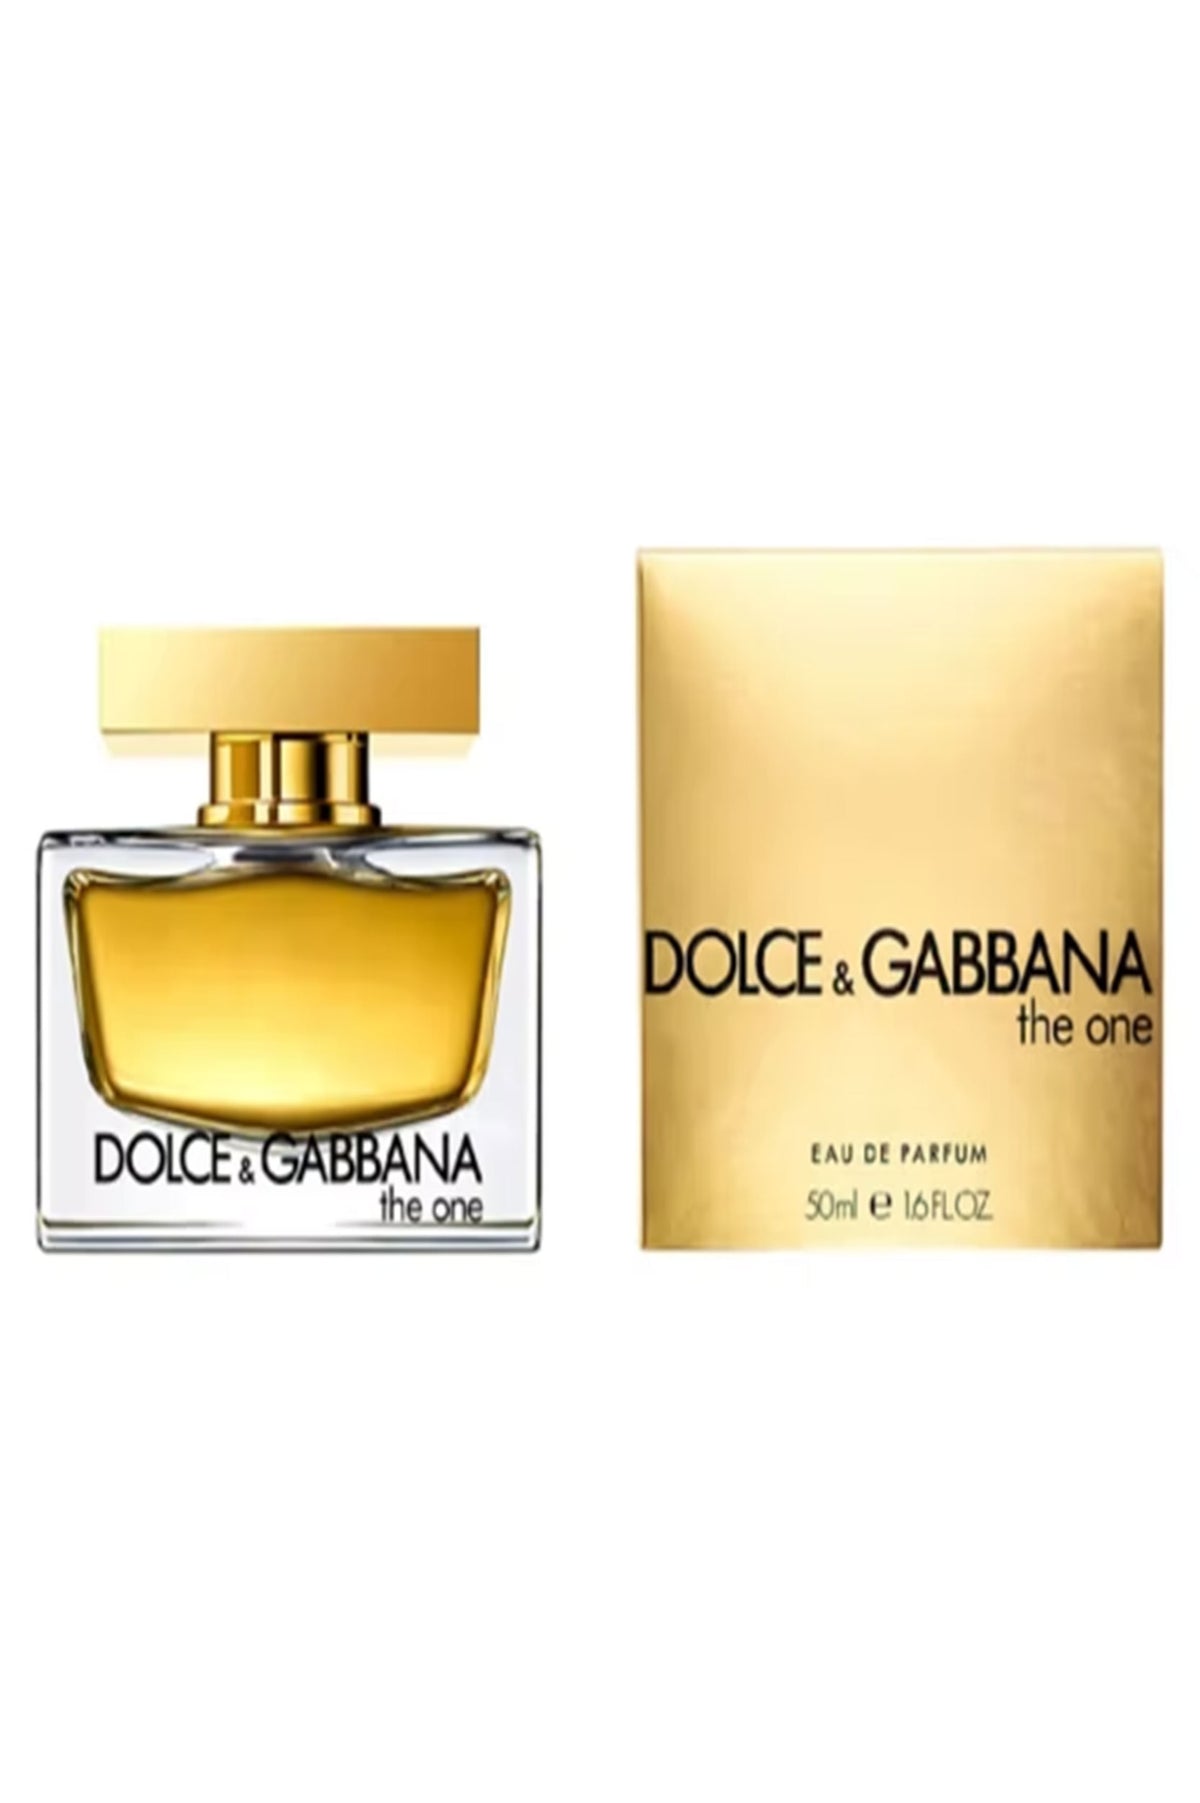 Dolce & Gabbana (The One)